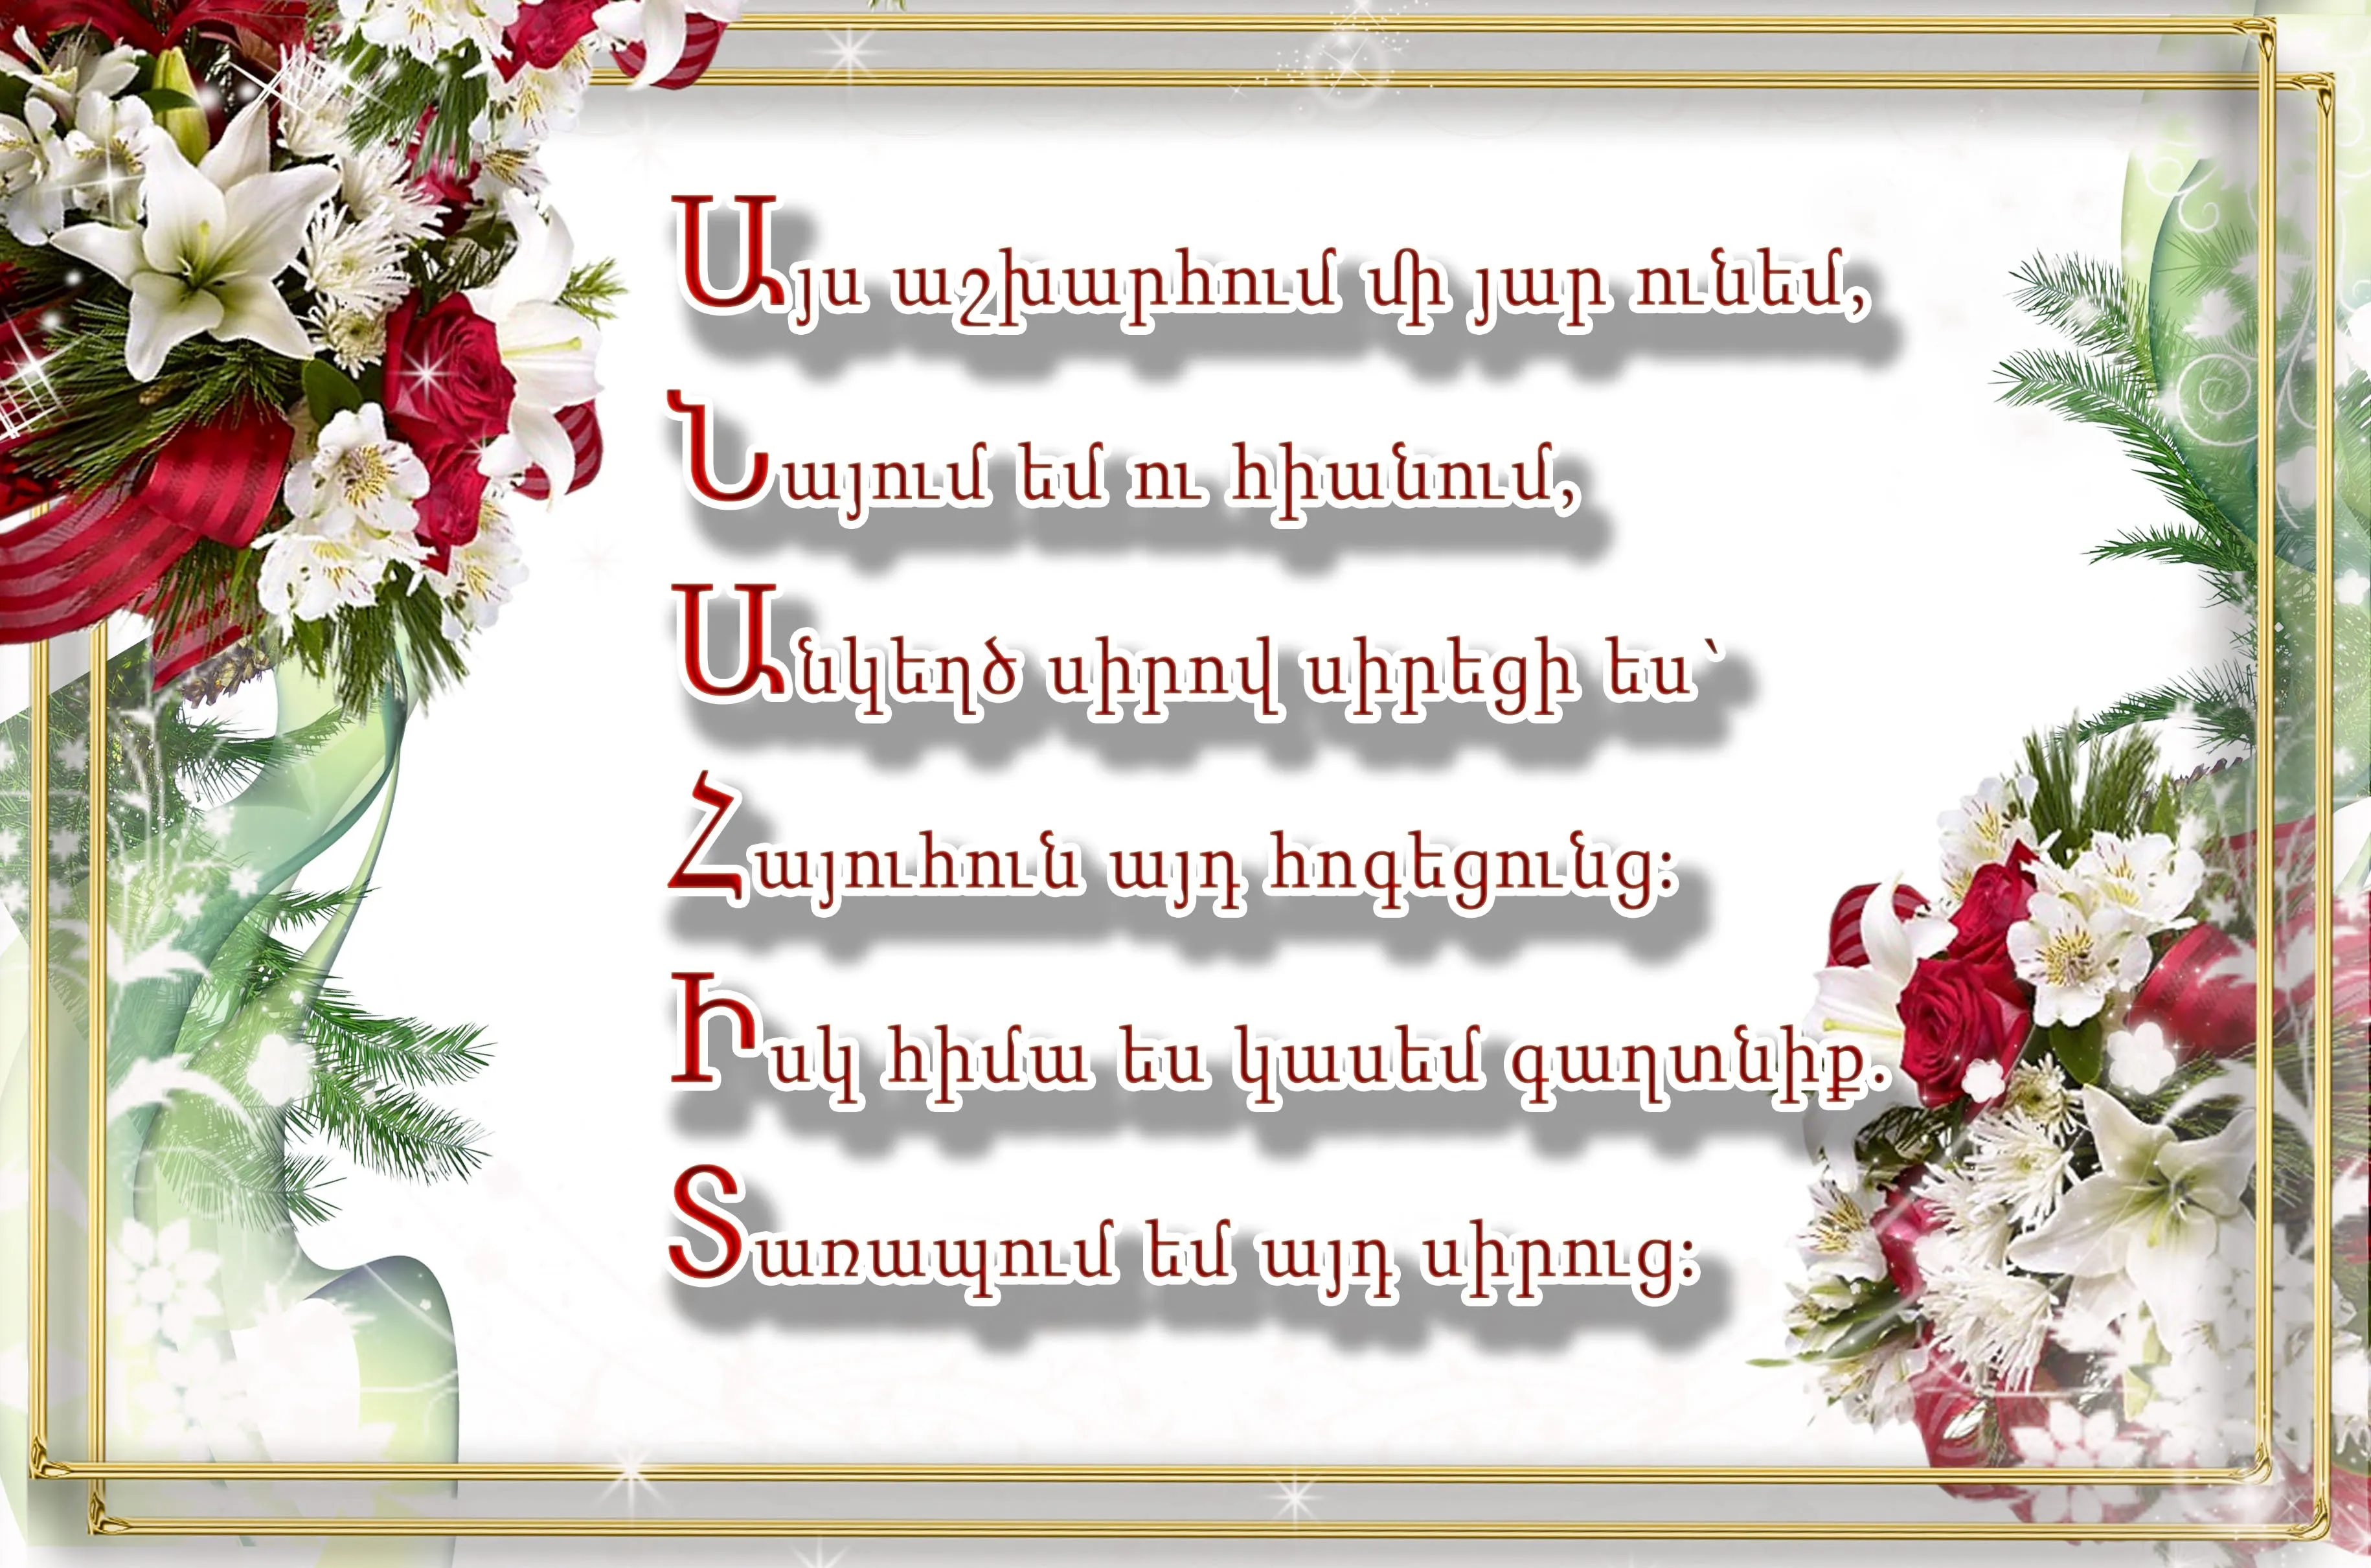 Поздравления с днем рождения на армянском языке. Поздравления с днём рождения на армянском языке. Армянские пожелания с днем рождения. Поздравления с днём рождения женщине на армянском языке. Армянская открытка с днем рождения.